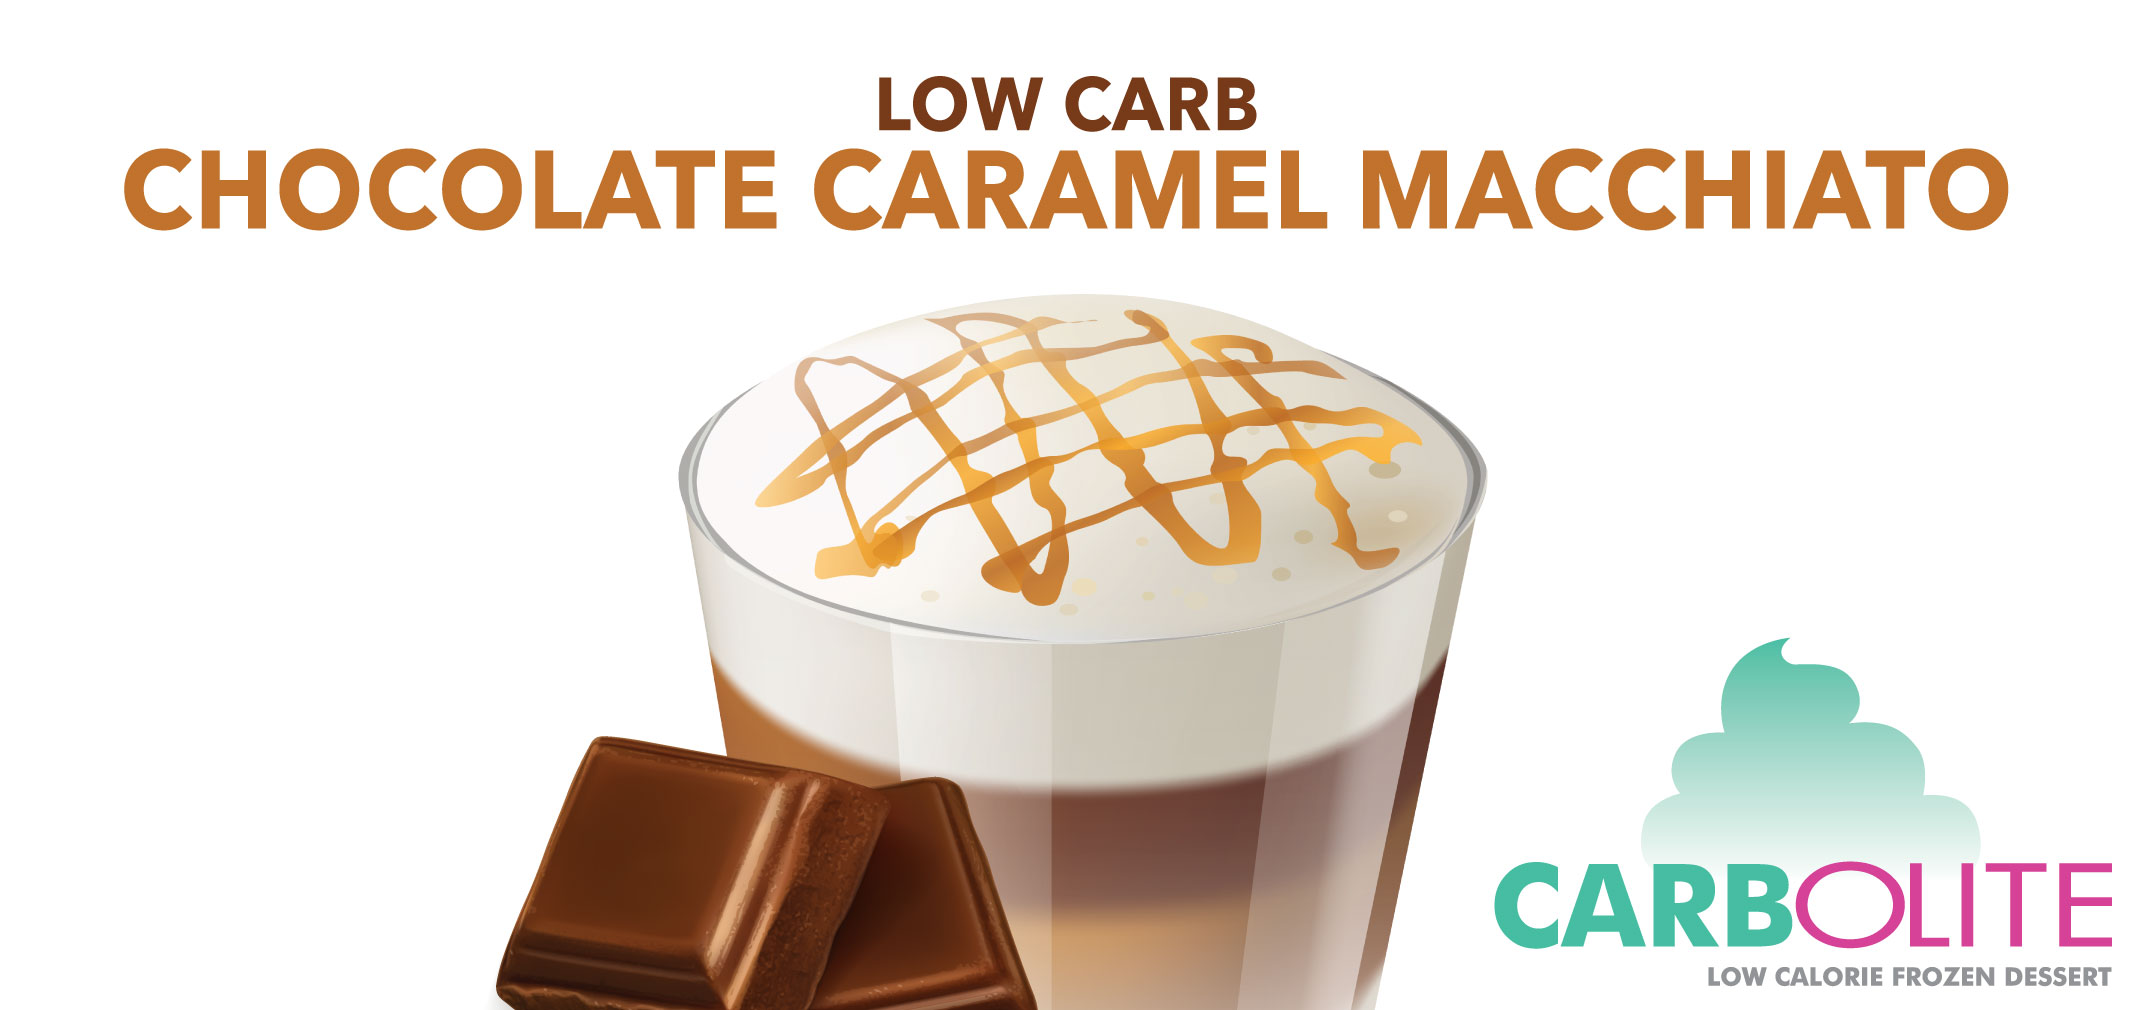 carbolite low carb chocolate caramel macchiato label image